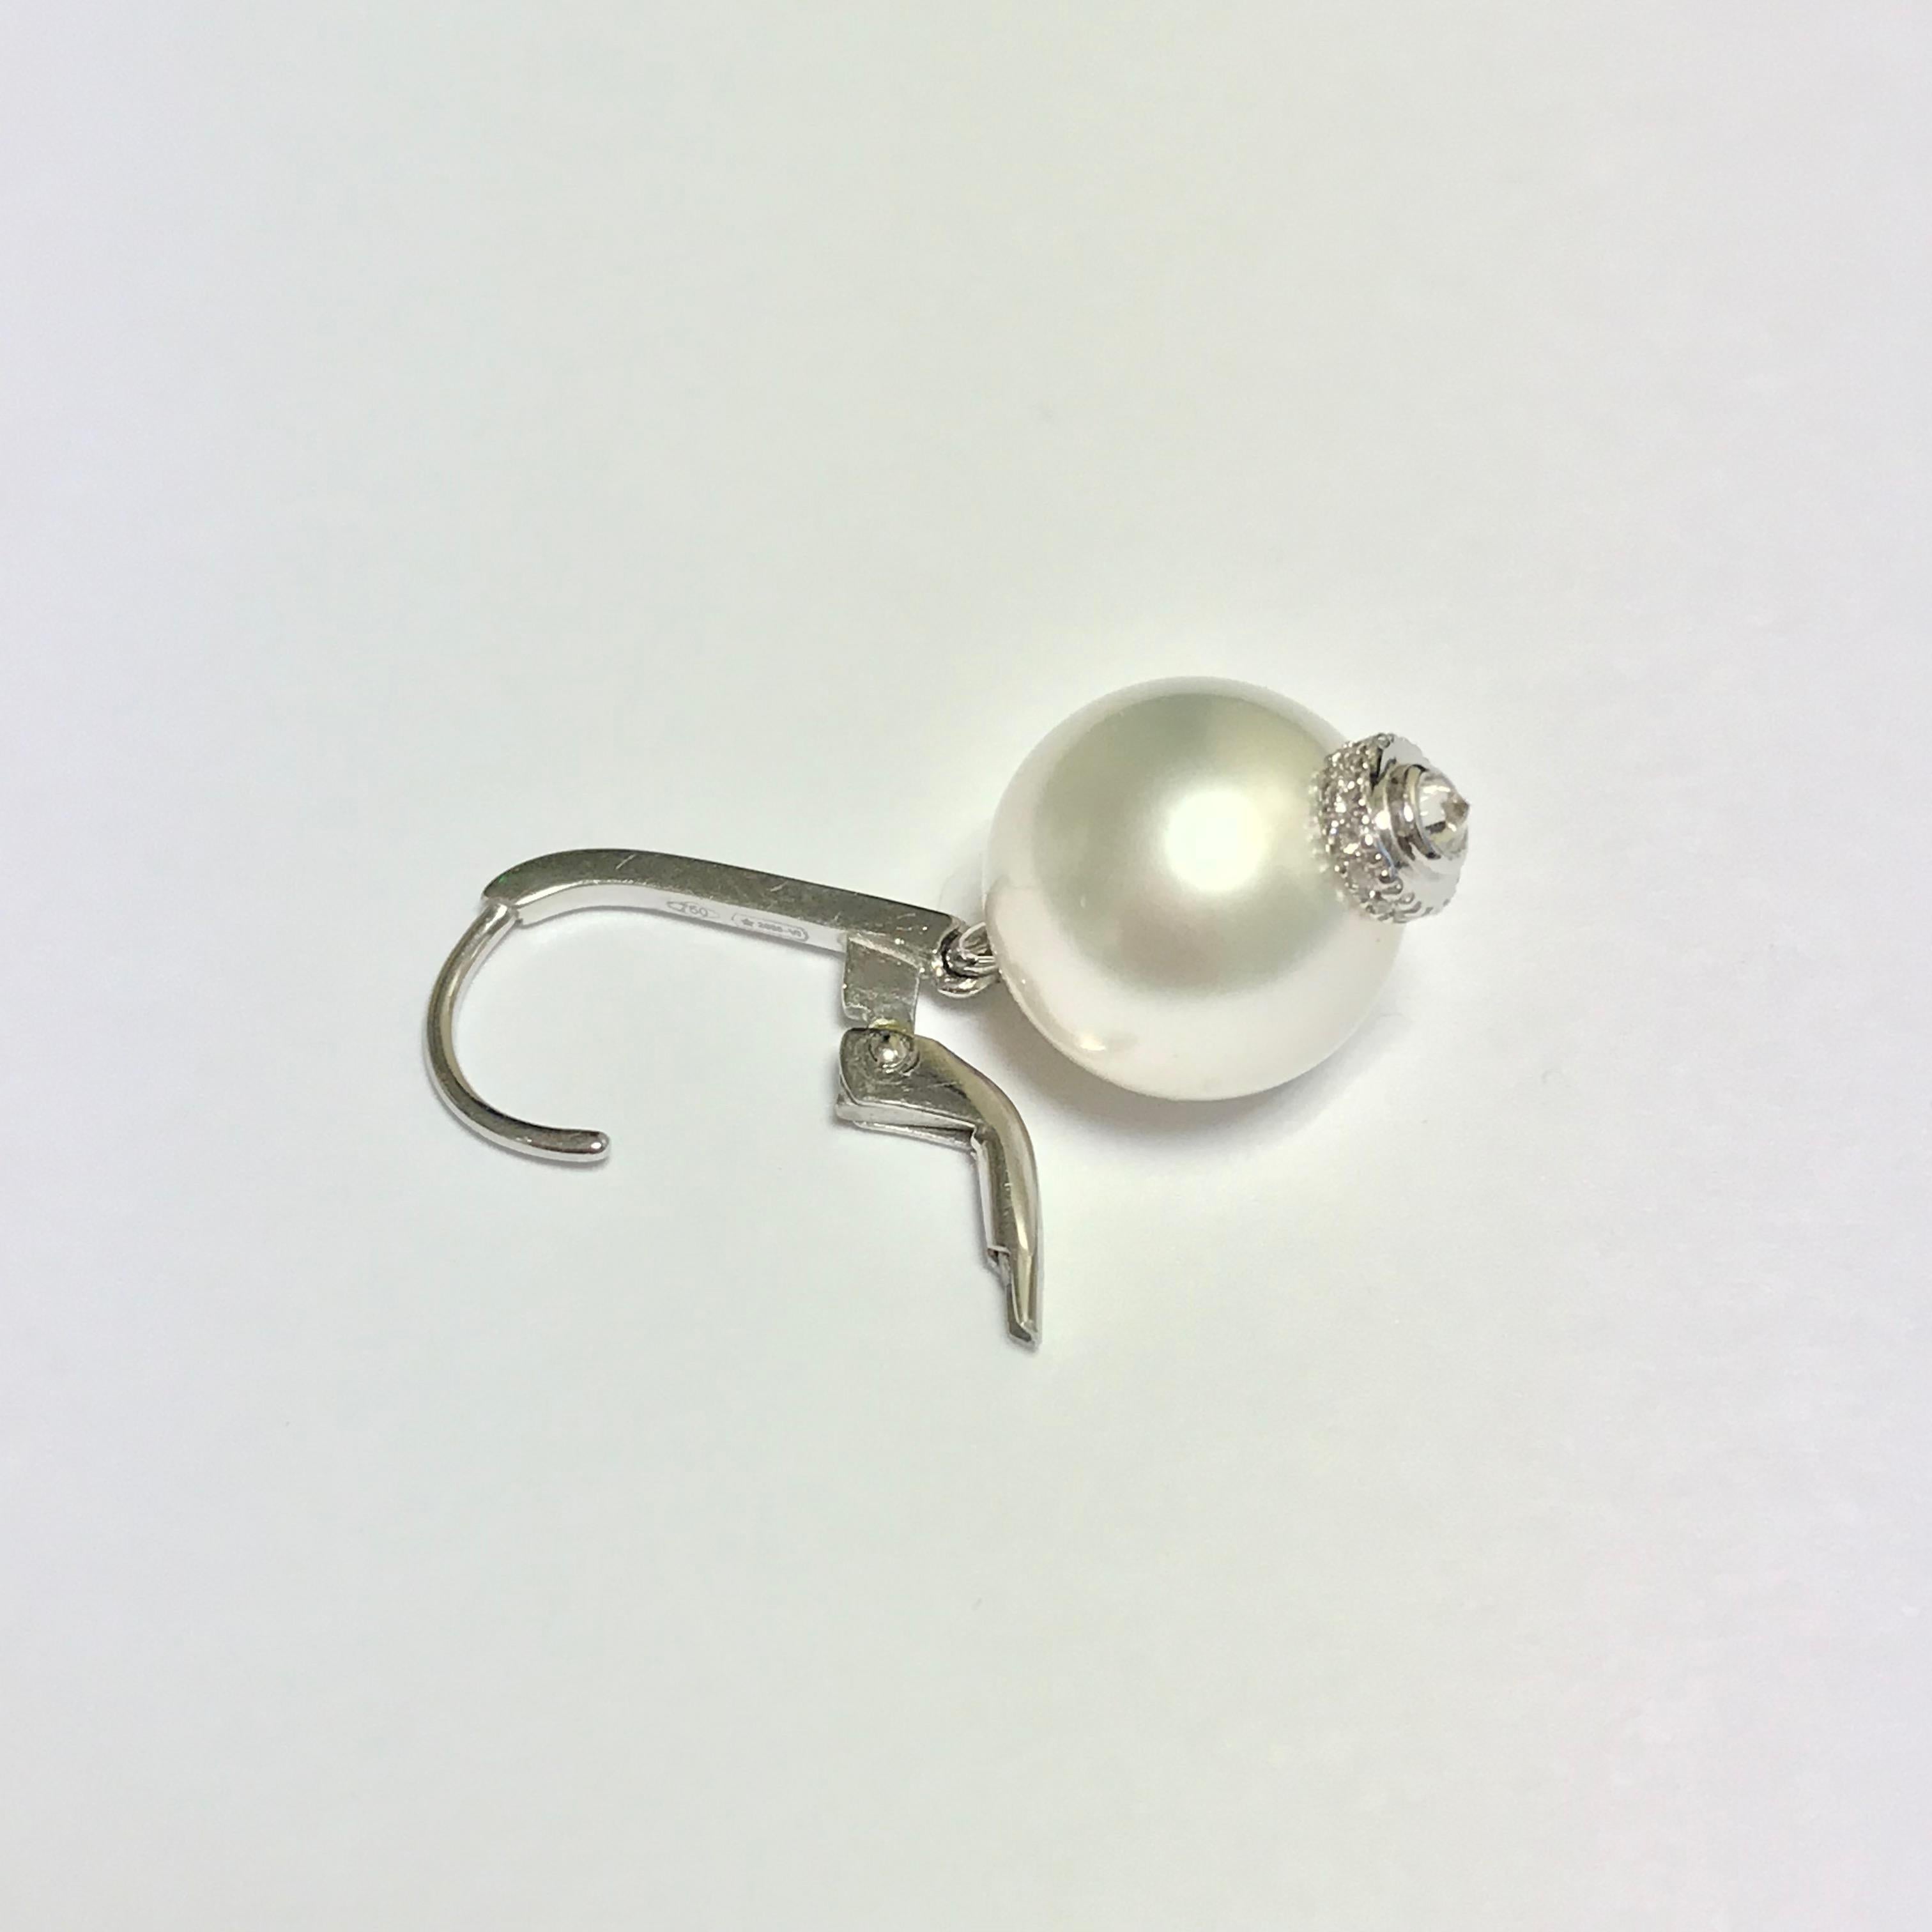 Laissez-vous séduire par ces somptueuses boucles d'oreilles chandelier en perles des mers du Sud et diamants blancs, montées sur un magnifique cintre en or blanc 18 carats.

Les perles des mers du Sud, d'un diamètre impressionnant de 11 à 12 mm,